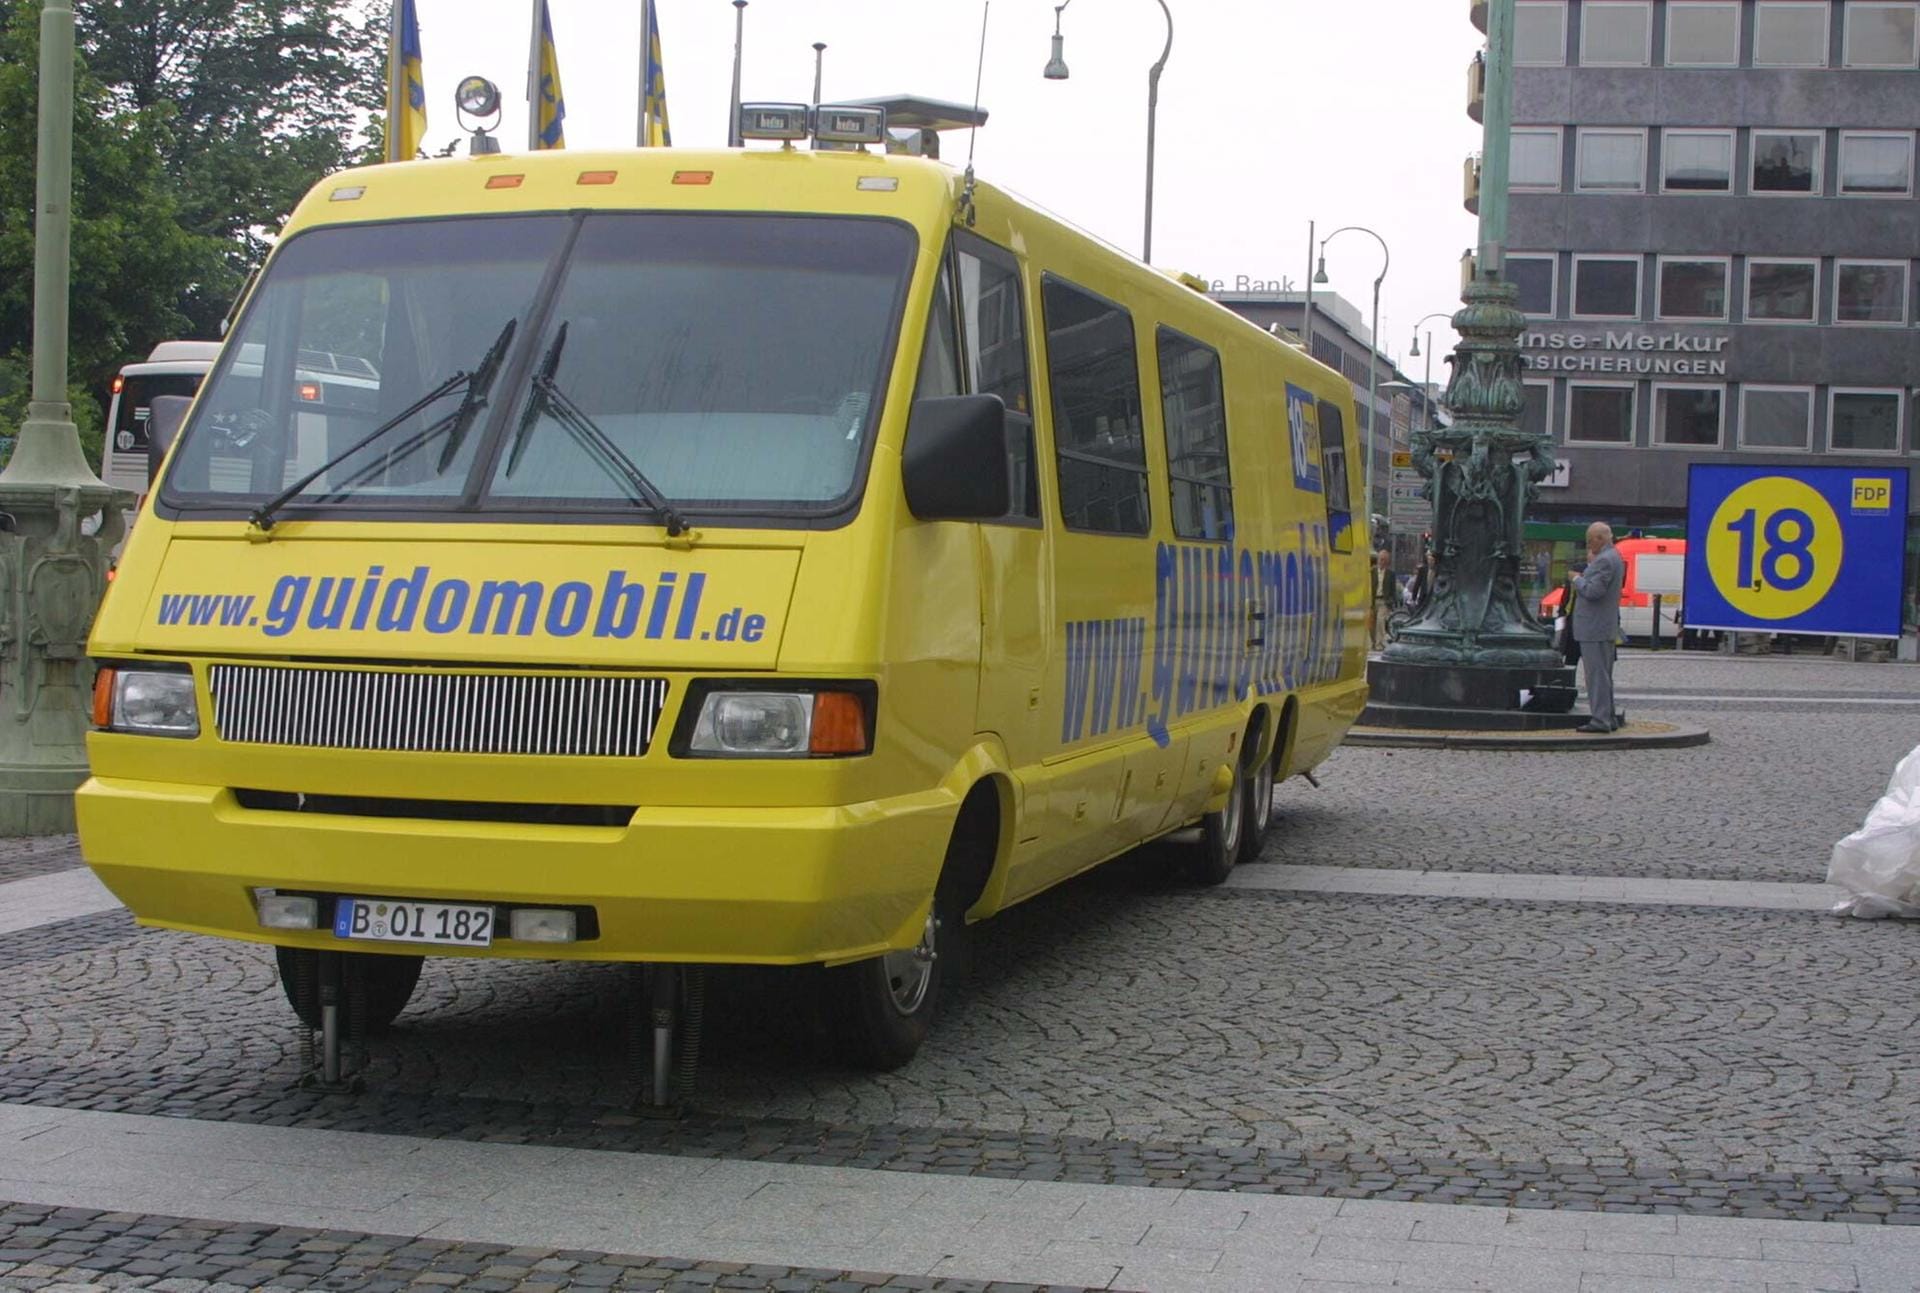 Das "Guidomobil" war 2002 sein Wahlkampffahrzeug und brachte ihm mehr Spott als Stimmen ein.